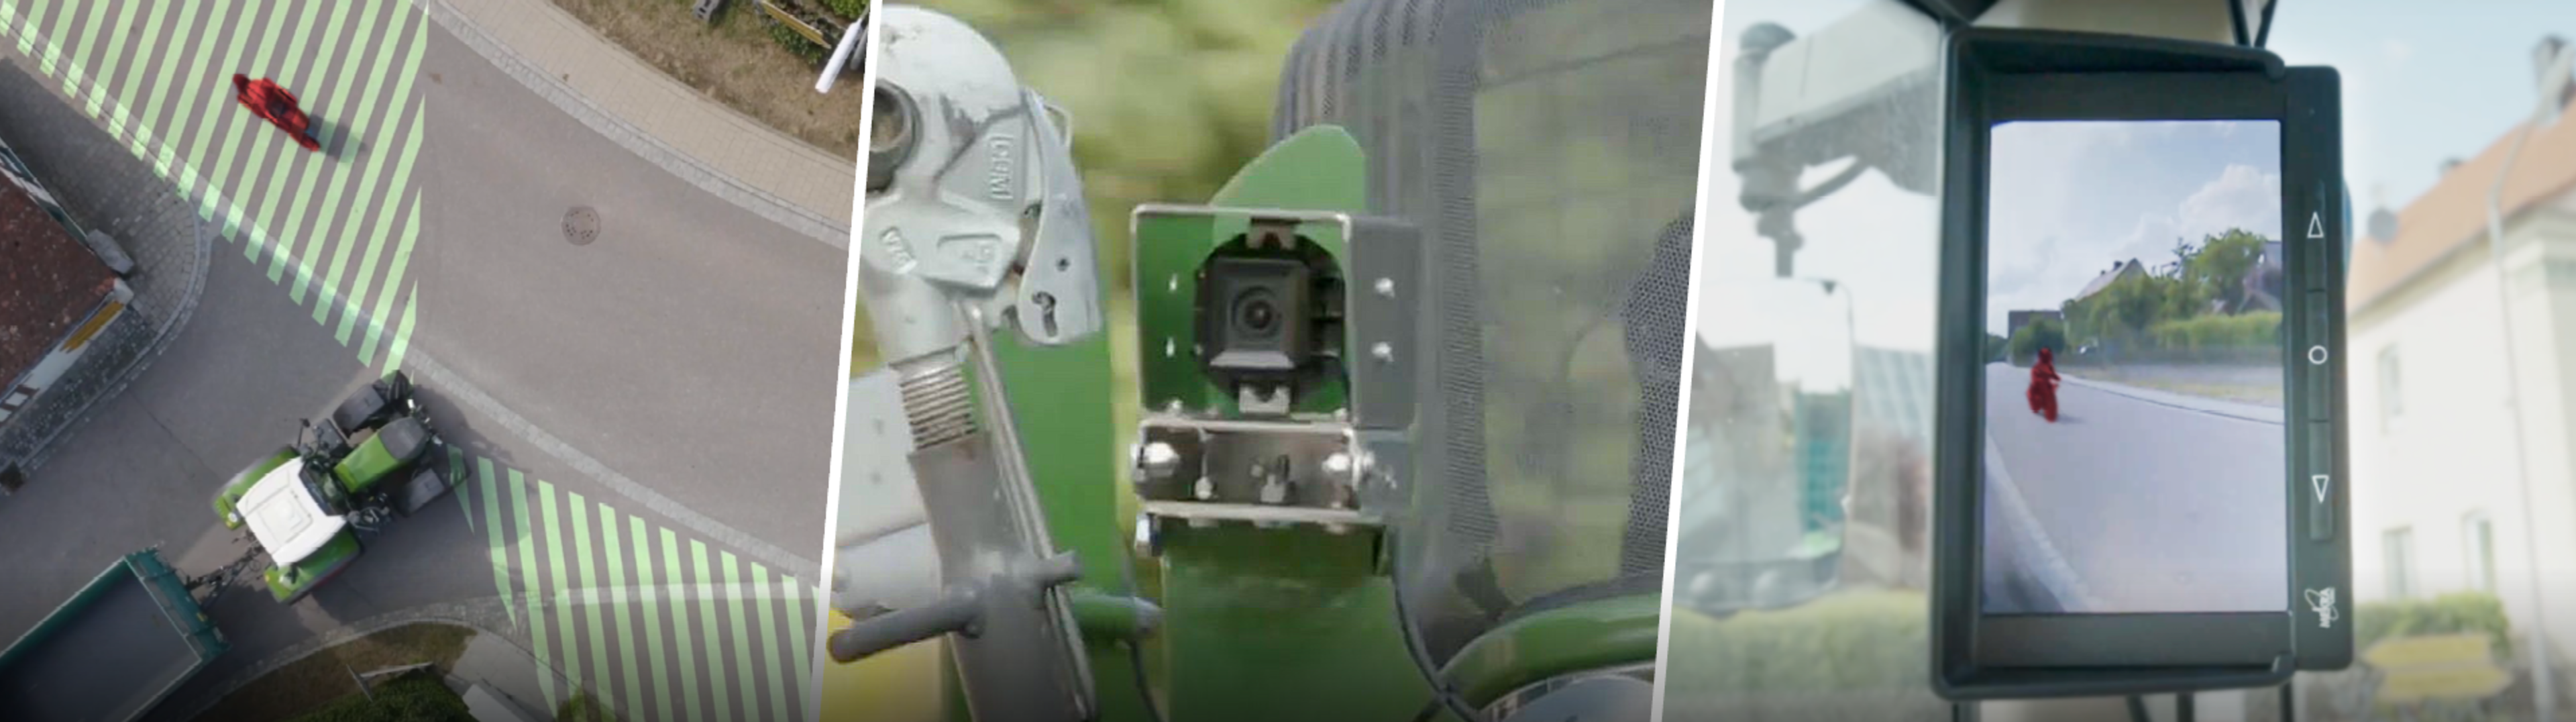 Basic QKMS System, Frontkamera für Traktoren mit Frontanbau. 3 Teiliges Bannerbild zeigt links Gefahrenzone, bzw. Sichtfeld um den Traktor. Mitte Bild von der Kamera im Gehäuse. Rechtes Bild zeigt Fahrradfahrer im Monitor.